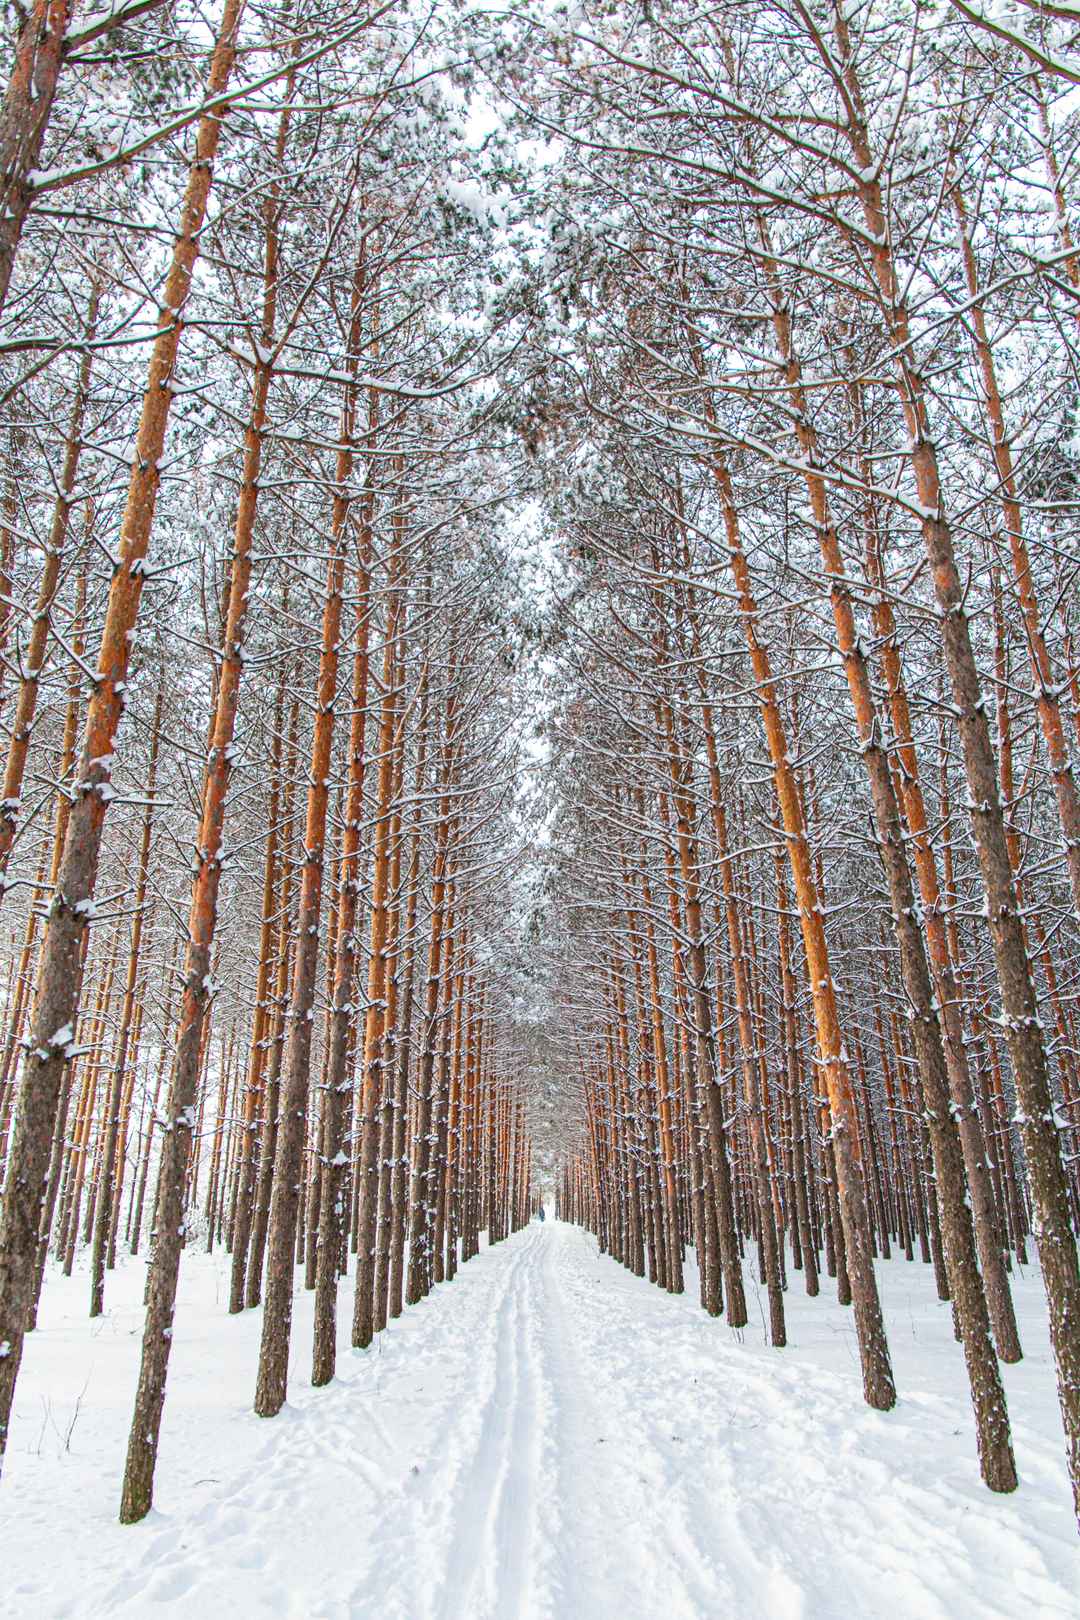 冬天唯美柏树林手机壁纸图片